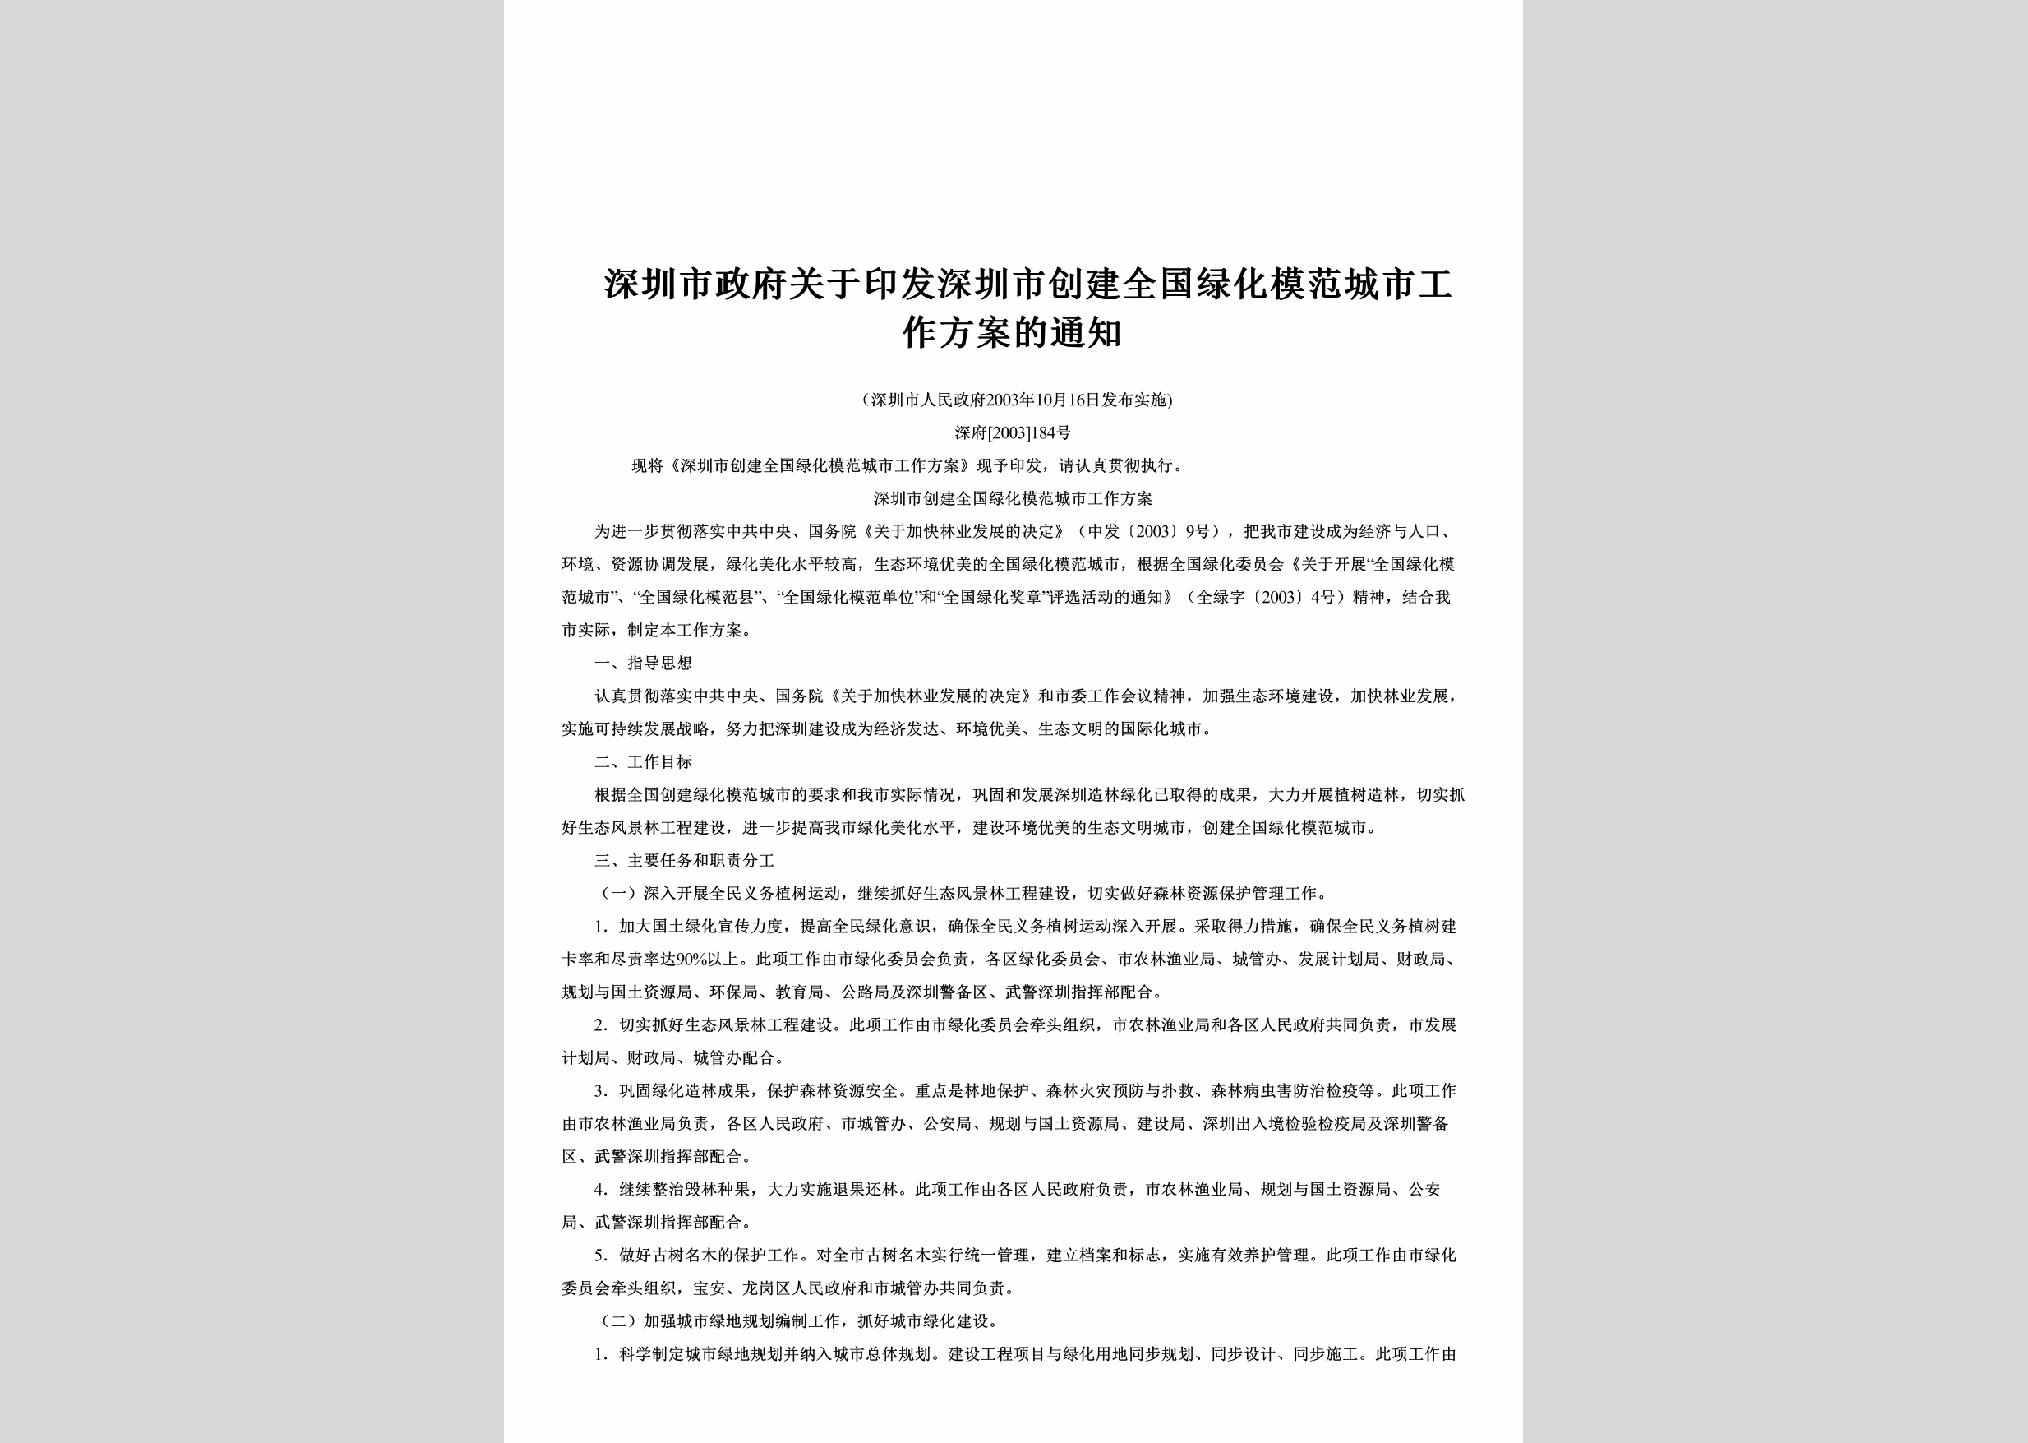 深府[2003]184号：关于印发深圳市创建全国绿化模范城市工作方案的通知